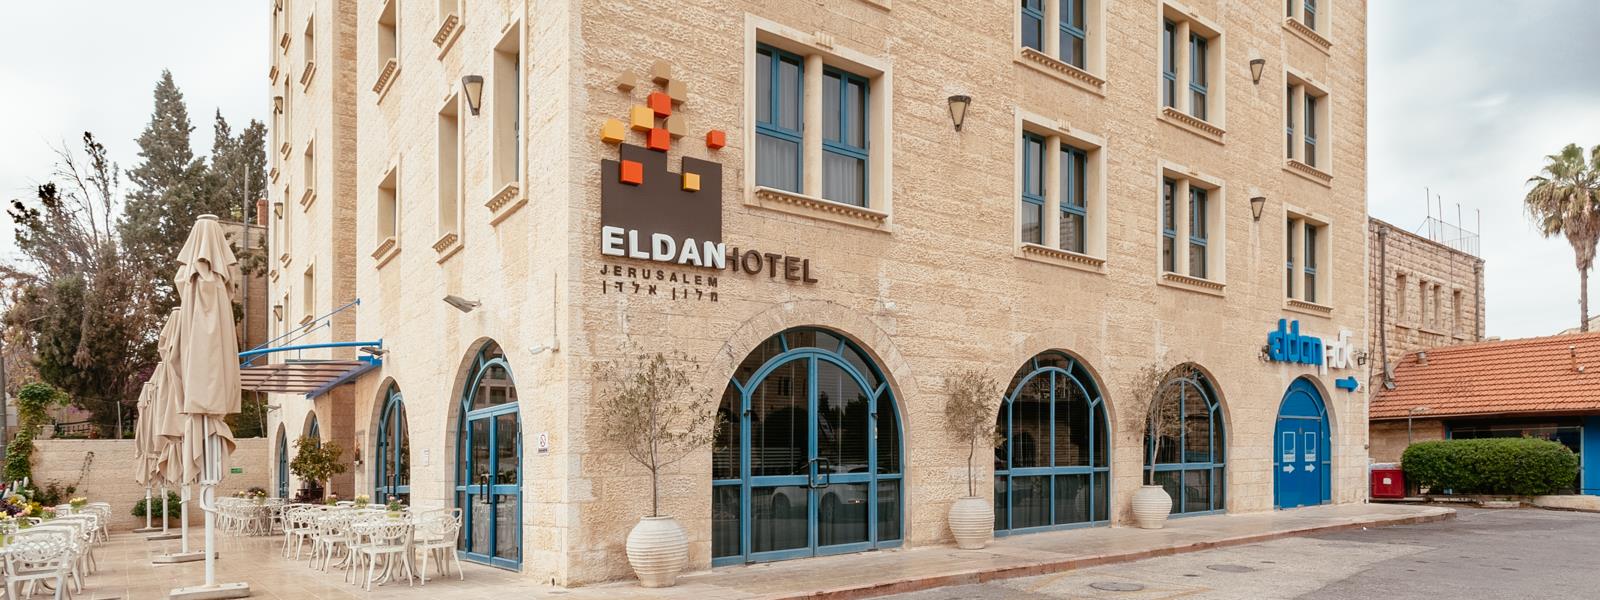 מלון אלדן -מלון בוטיק בירושלים 